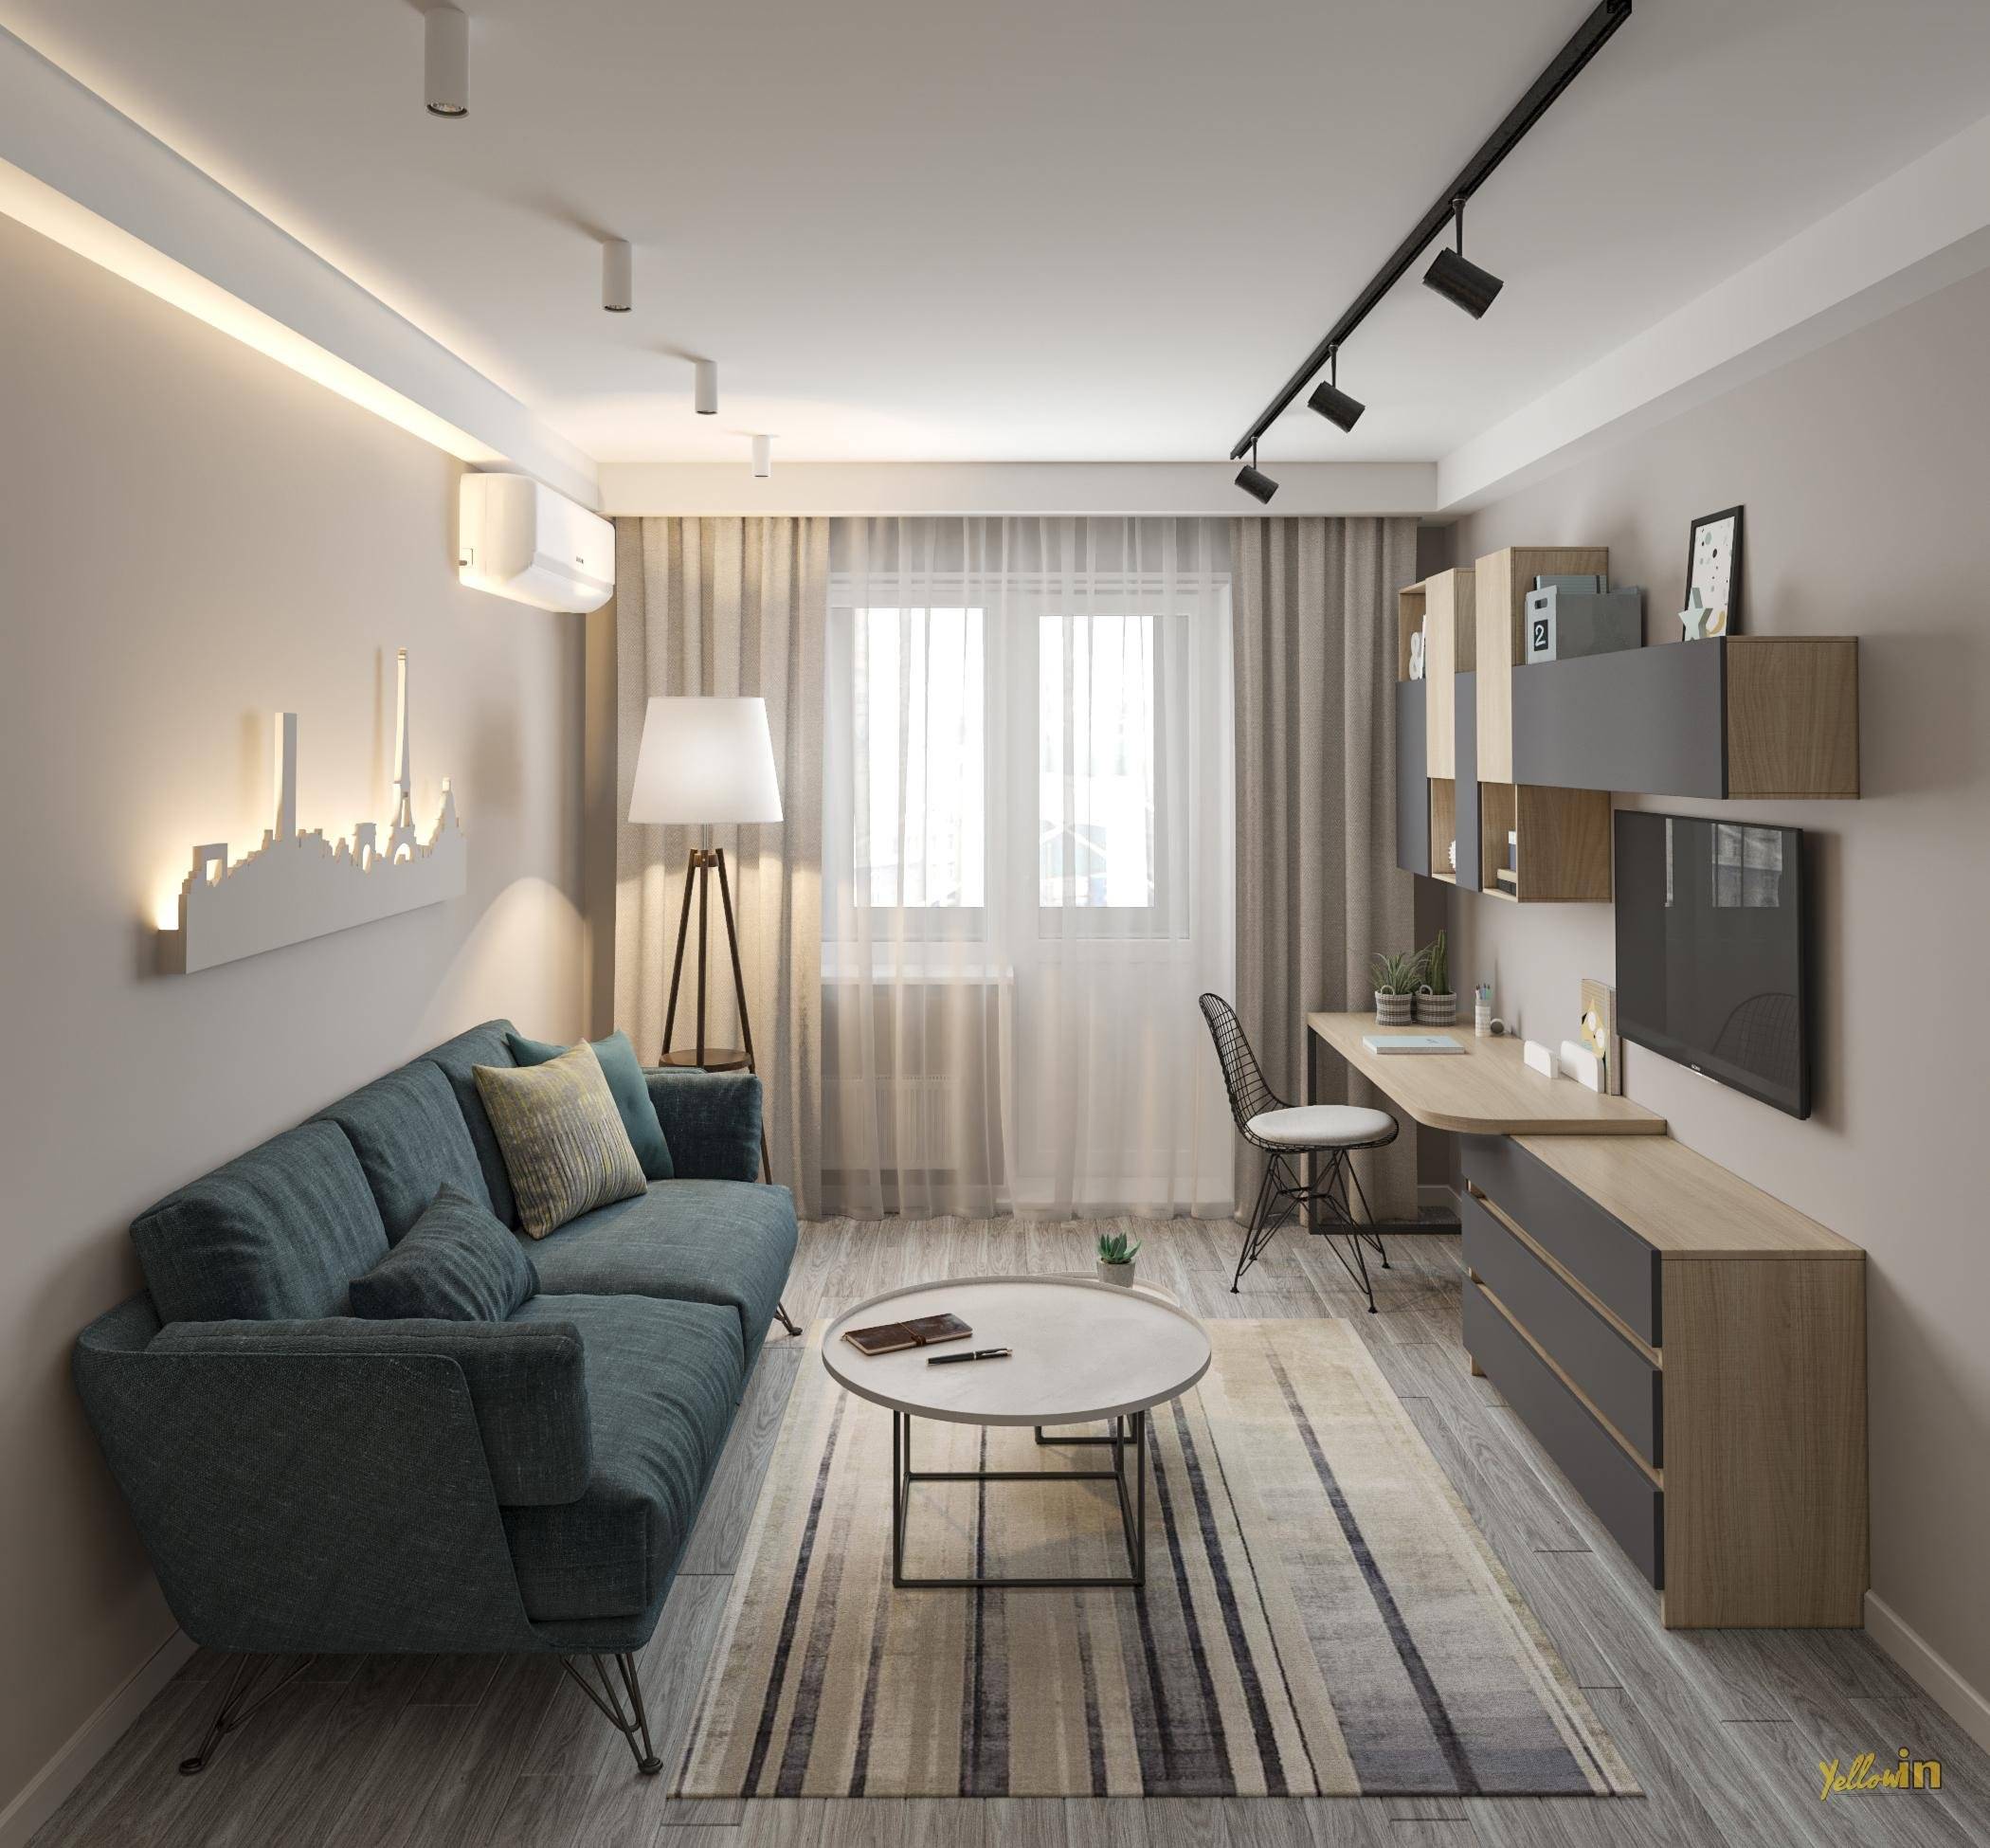 проект дизайн интерьера 2 комнатной квартиры